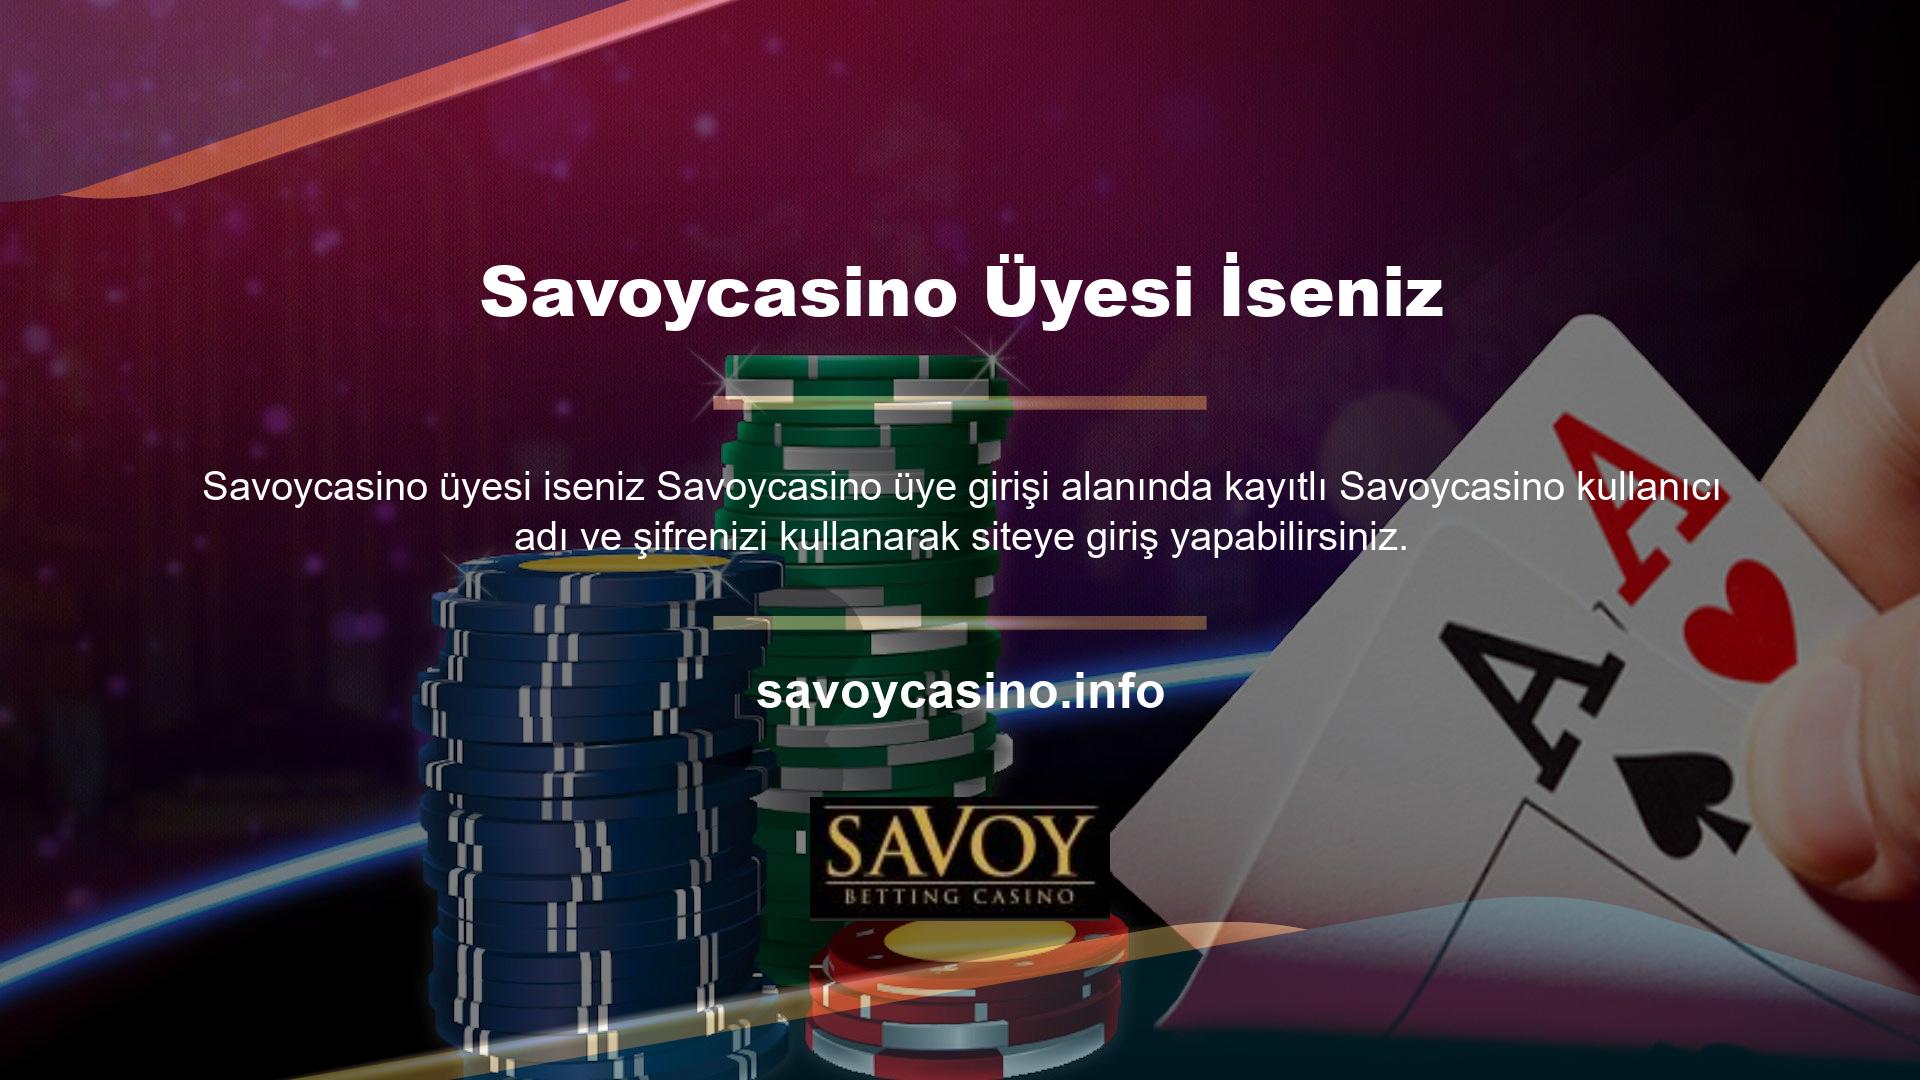 Tüm online bahis siteleri ve casino sitelerinde olduğu gibi Savoycasino kayıt işlemi, Savoycasino online bahis siteleri ve casino sitelerinin hizmetlerinden faydalanmak için kendi adınıza Savoycasino hesabı açmanızı gerektirmektedir